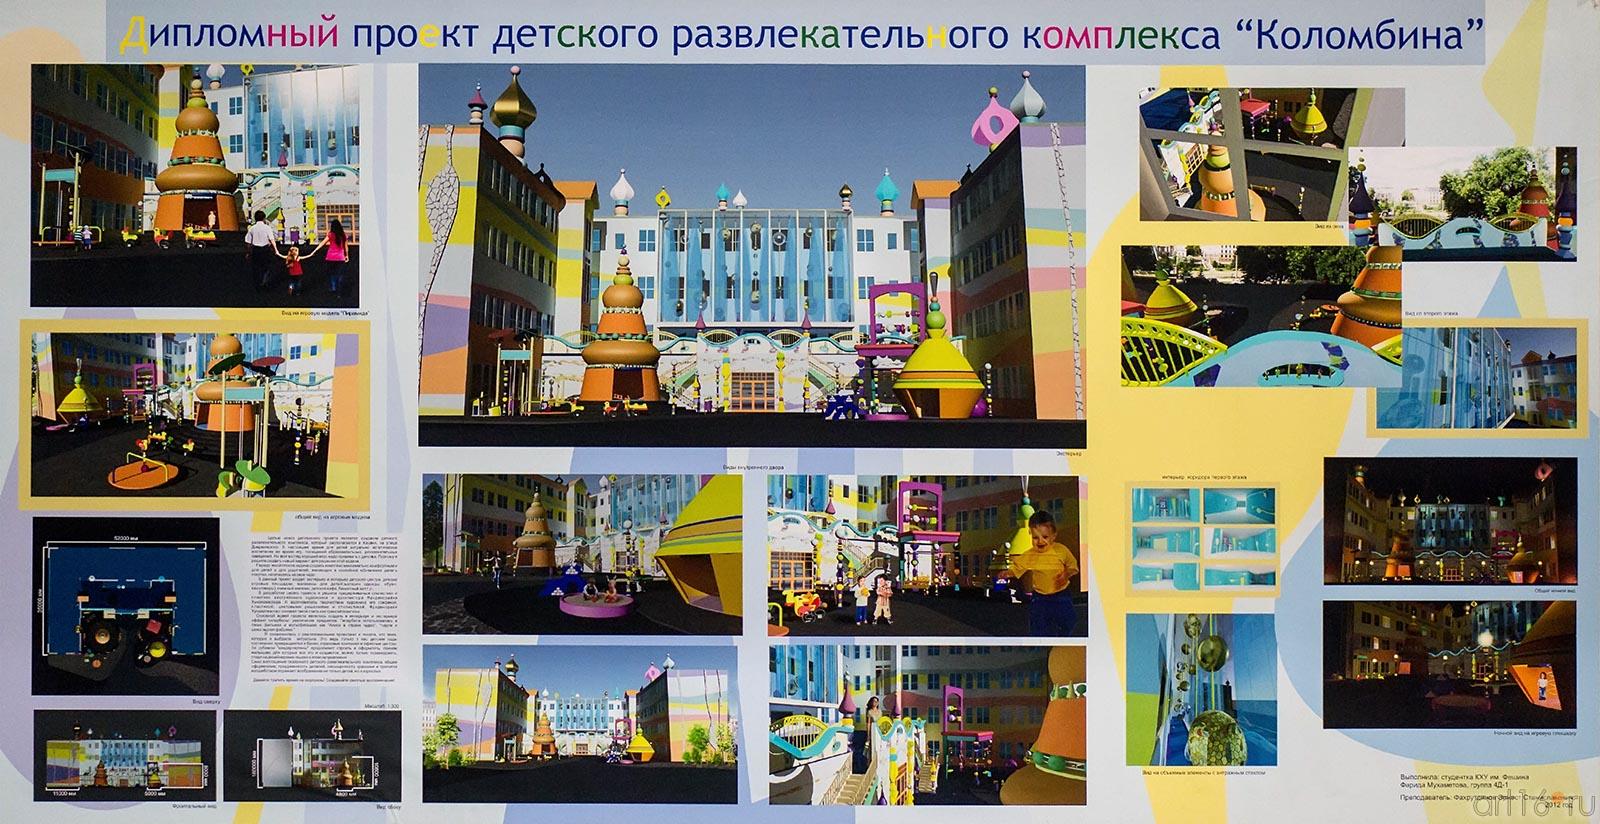 Дипломный проект ДРК ʺКоломбинаʺ::Арт-галерея 2013, на Казанской ярмарке ( ч.2)